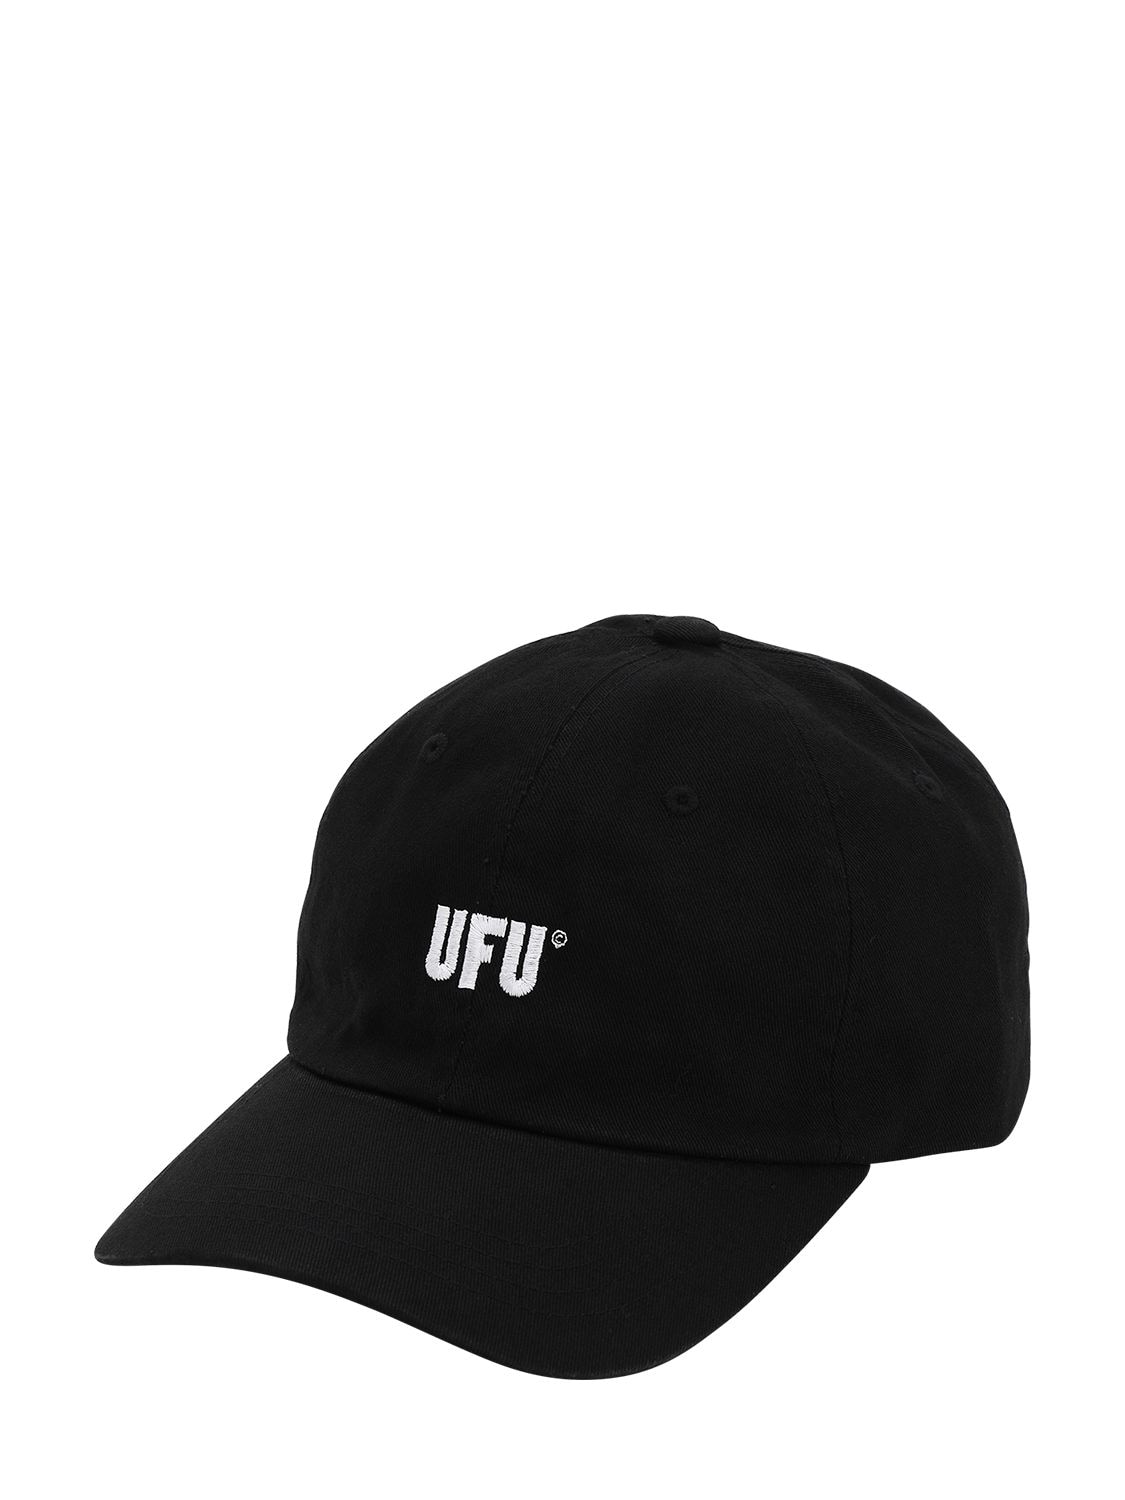 Ufu - Used Future “ufu Ad”纯棉帆布棒球帽 In Black